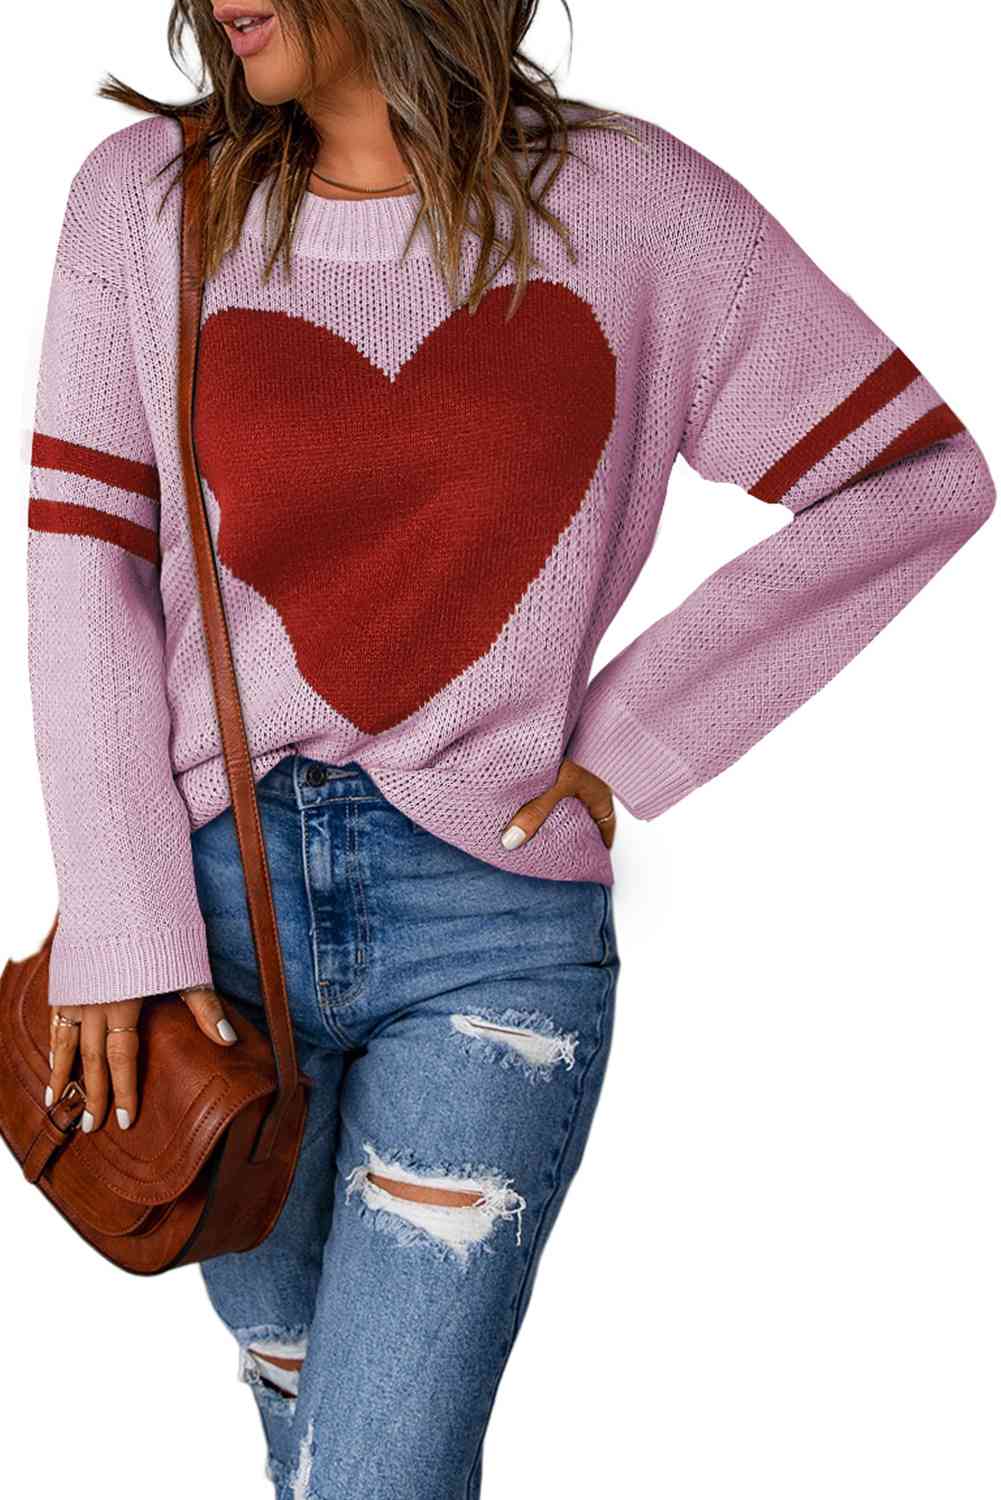 TEEK - Arm Stripe Heart Sweater SWEATER TEEK Trend Moonlit Mauve S 